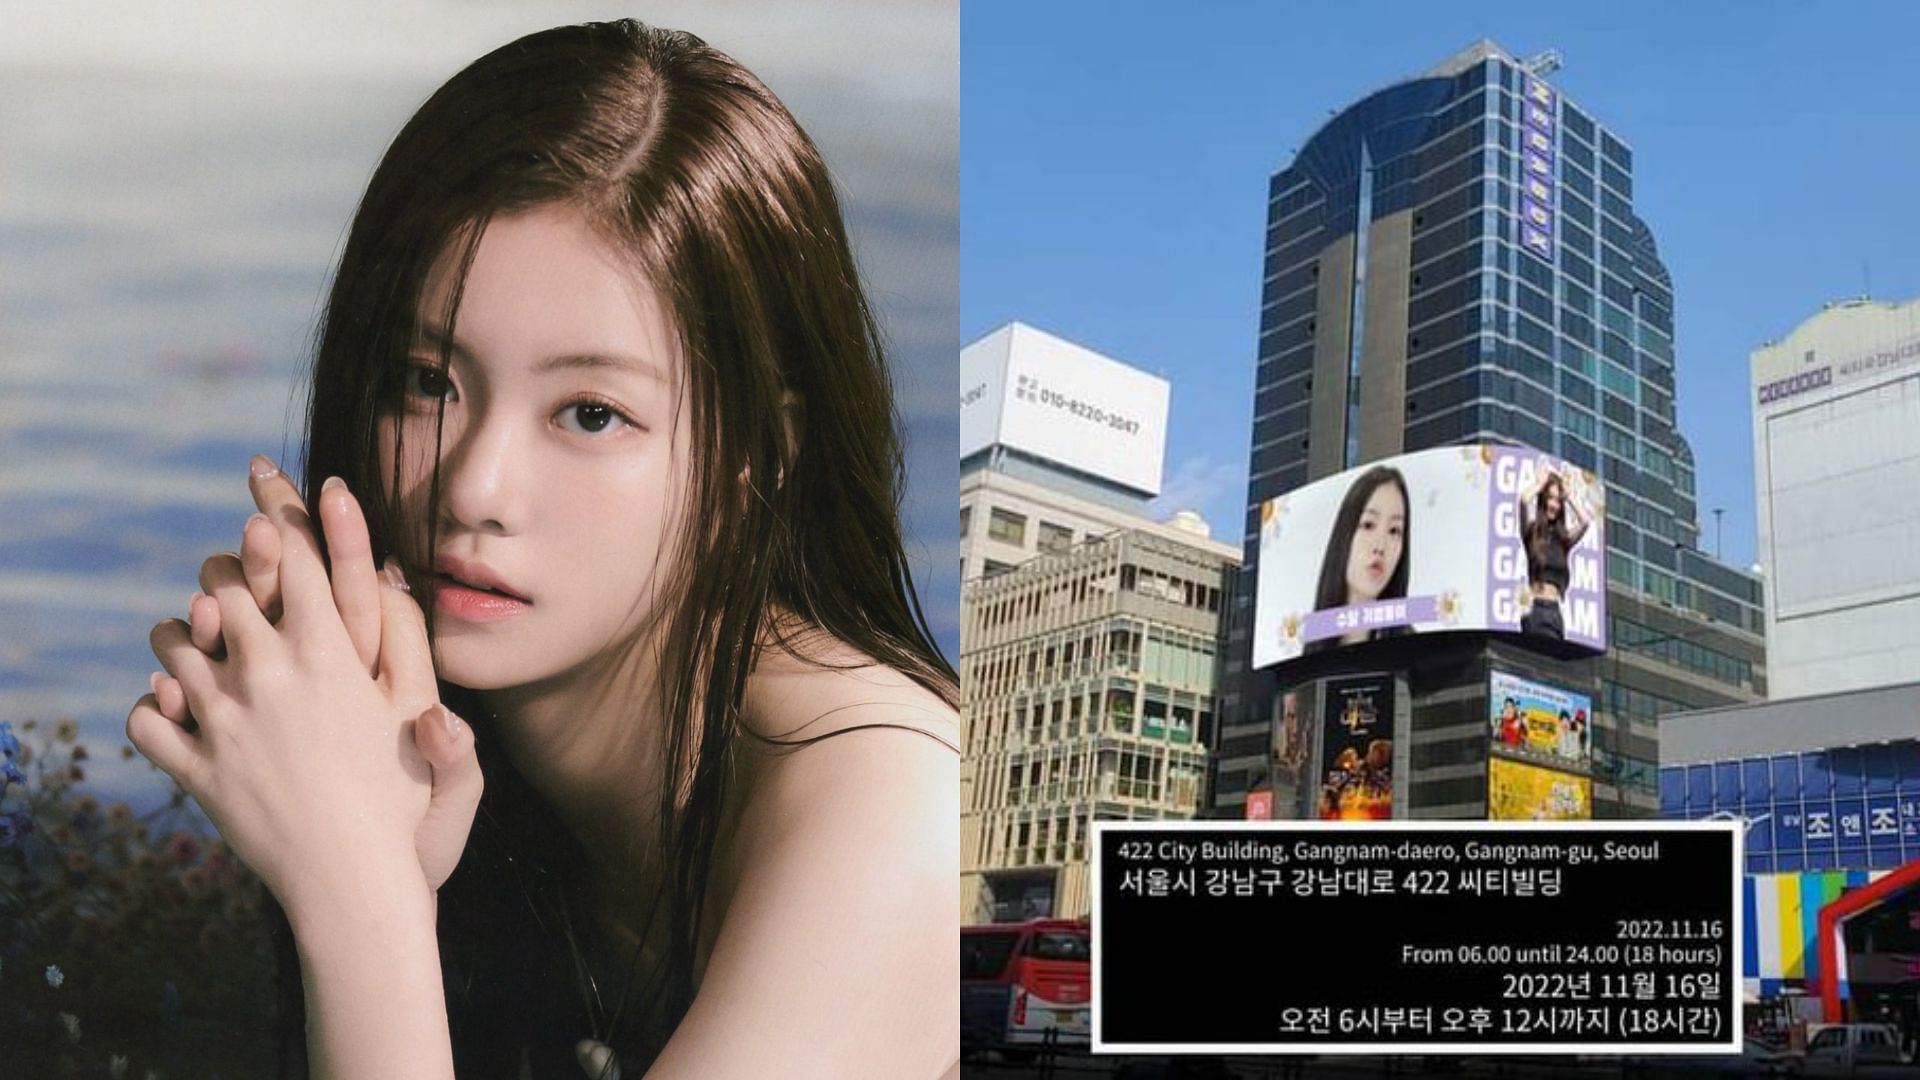 Kim Garam reacts to her birthday billboard in Gangnam (Image via Twitter/@grmlovbot  @garamiess)